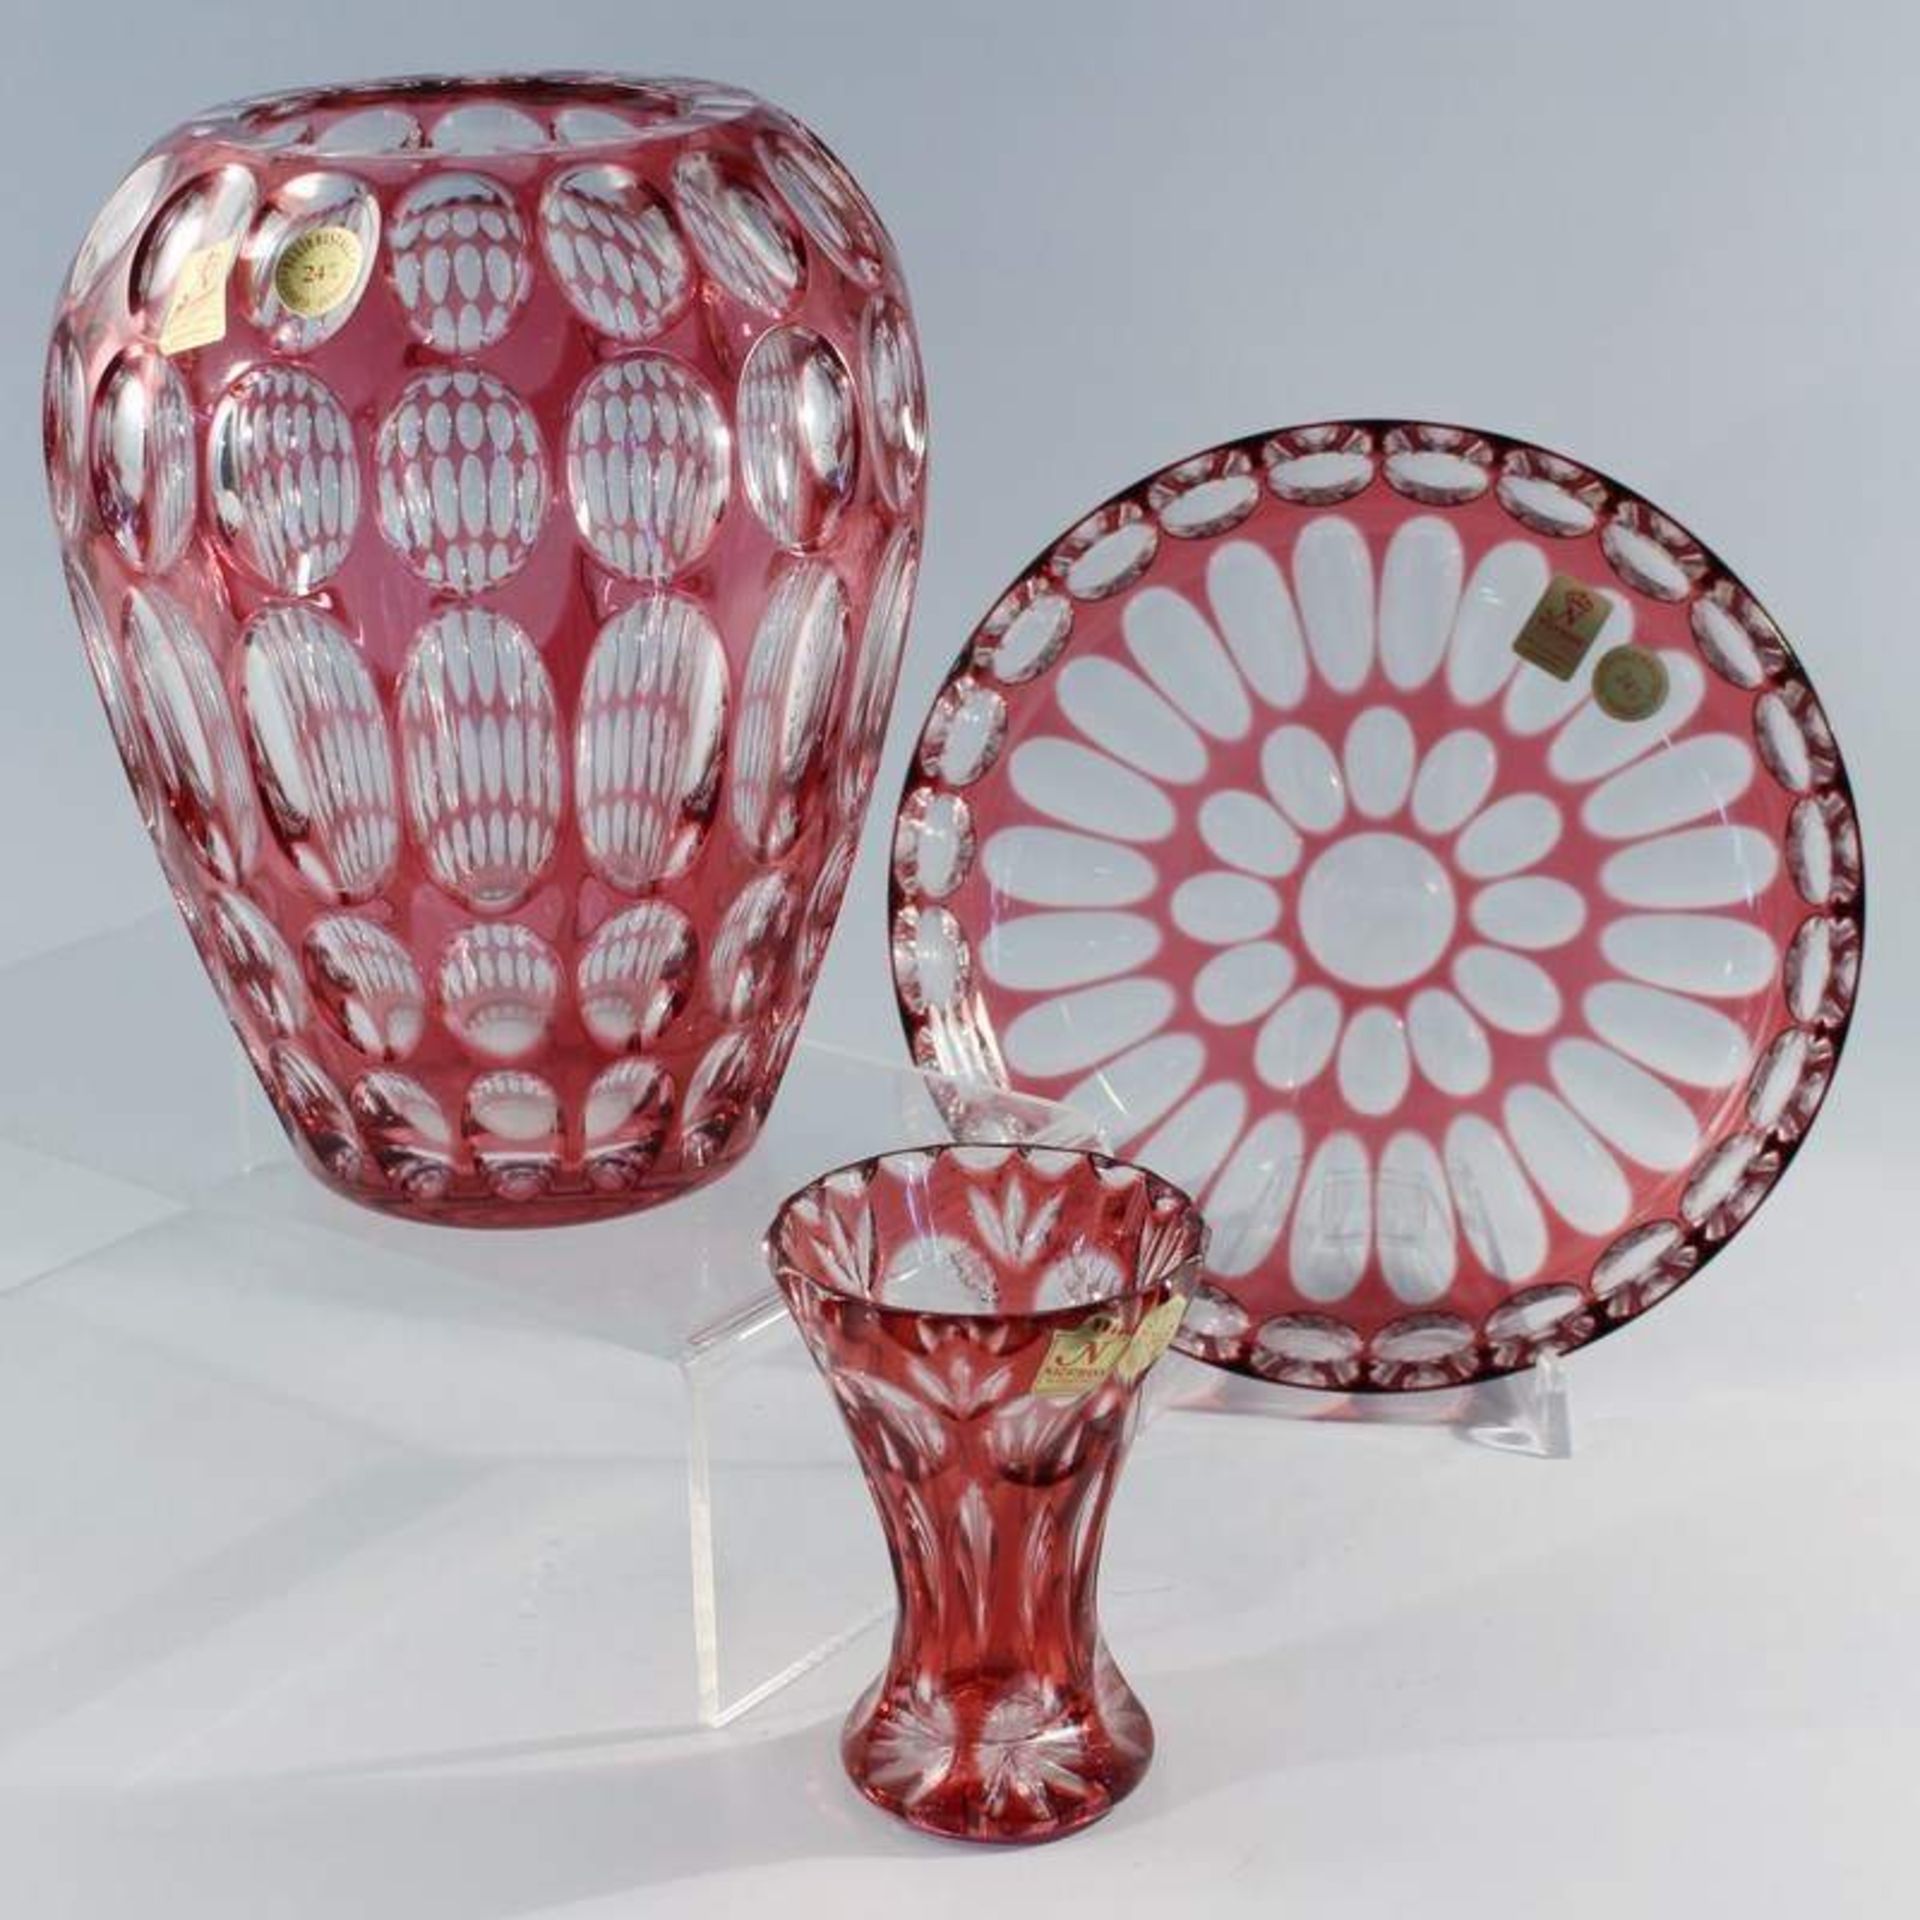 Konvolut - Nachtmann 3 St., untersch. Formen u. Größen, 2 Vasen, Schale, farbloses Glas, rot